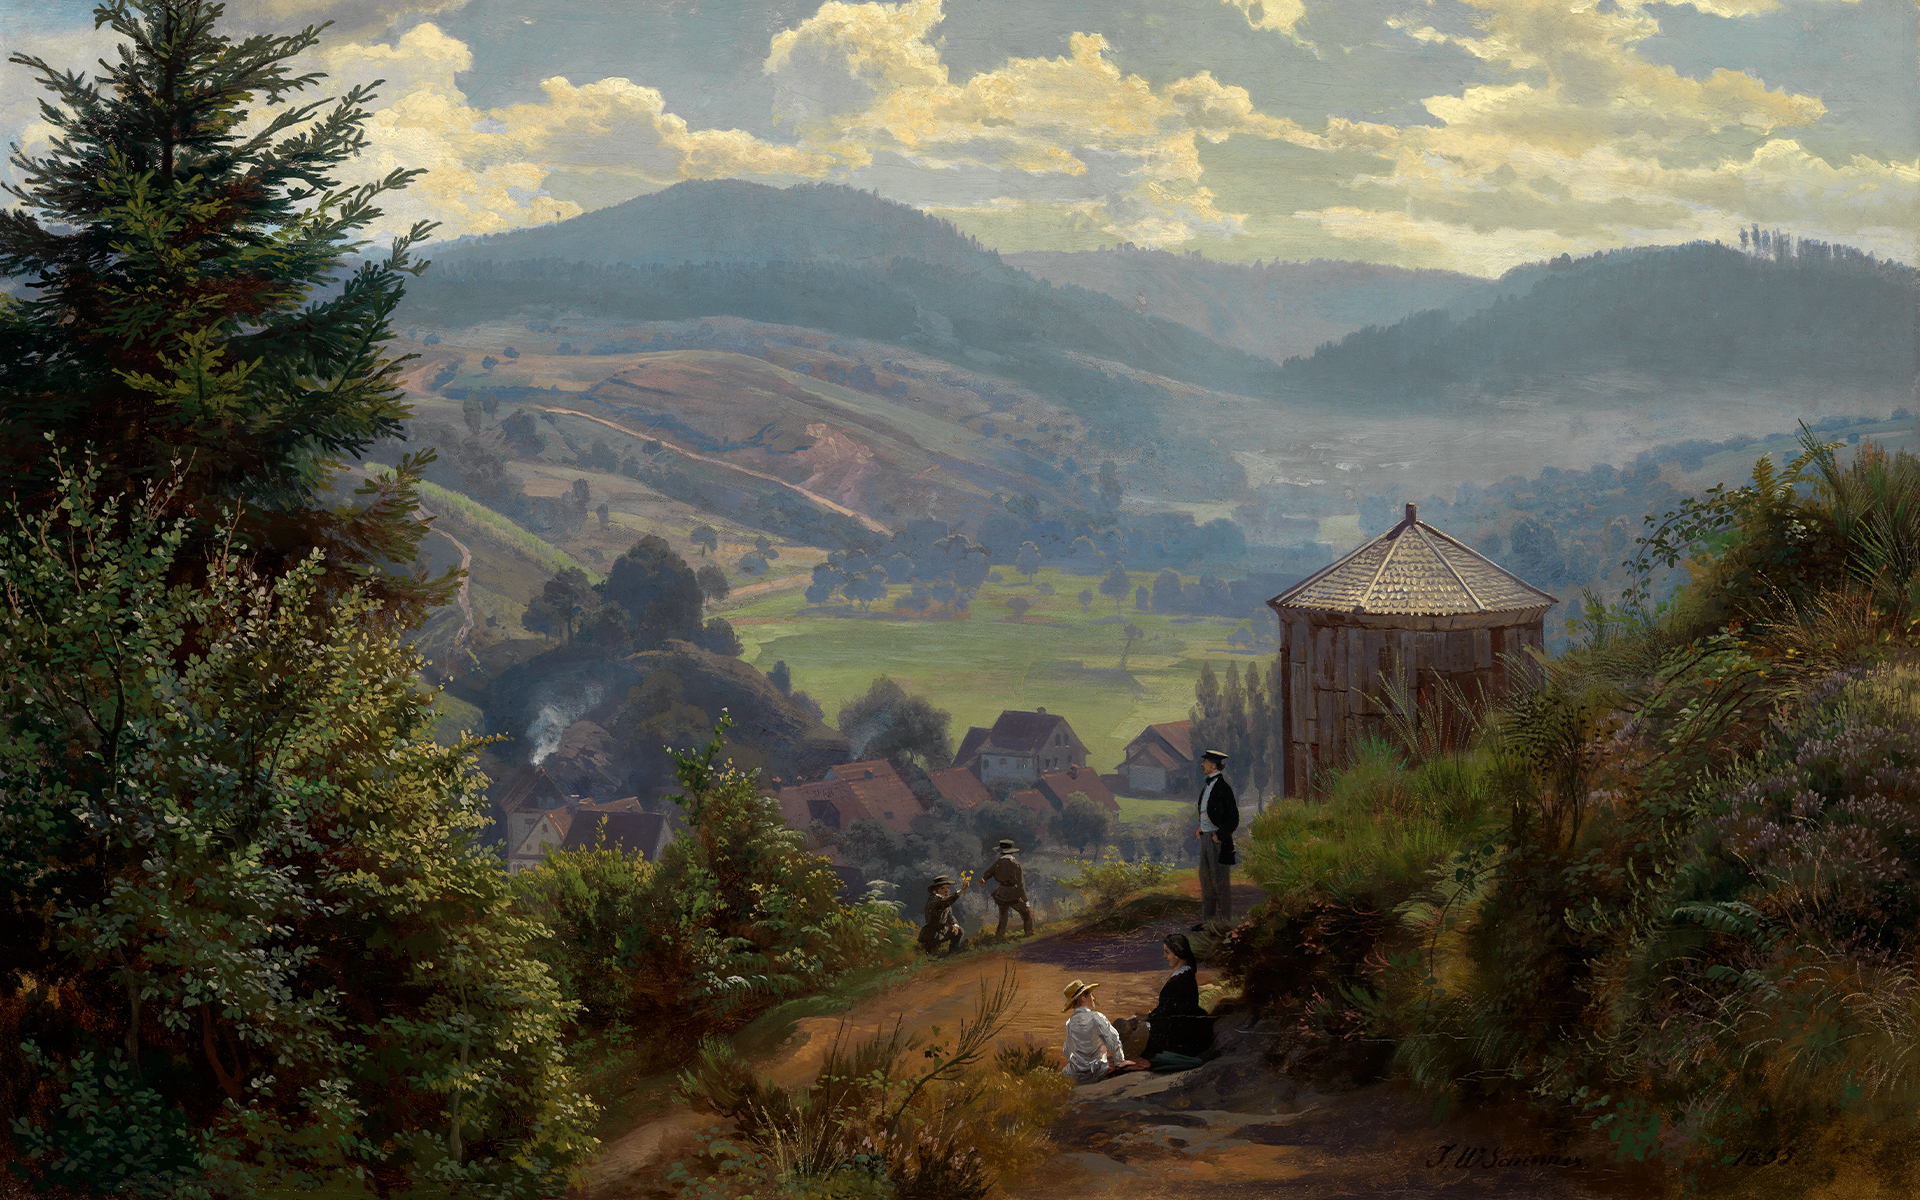 Gemälde von Johann Wilhelm Schirmer, dass das Oberbeuerner Tal vom Cäcilienberg aus zeigt. Man blickt in ein Tal mit Wiesen und Bäumen. In Vordergrund sieht man Personen an einer oktogonalen Hütte.